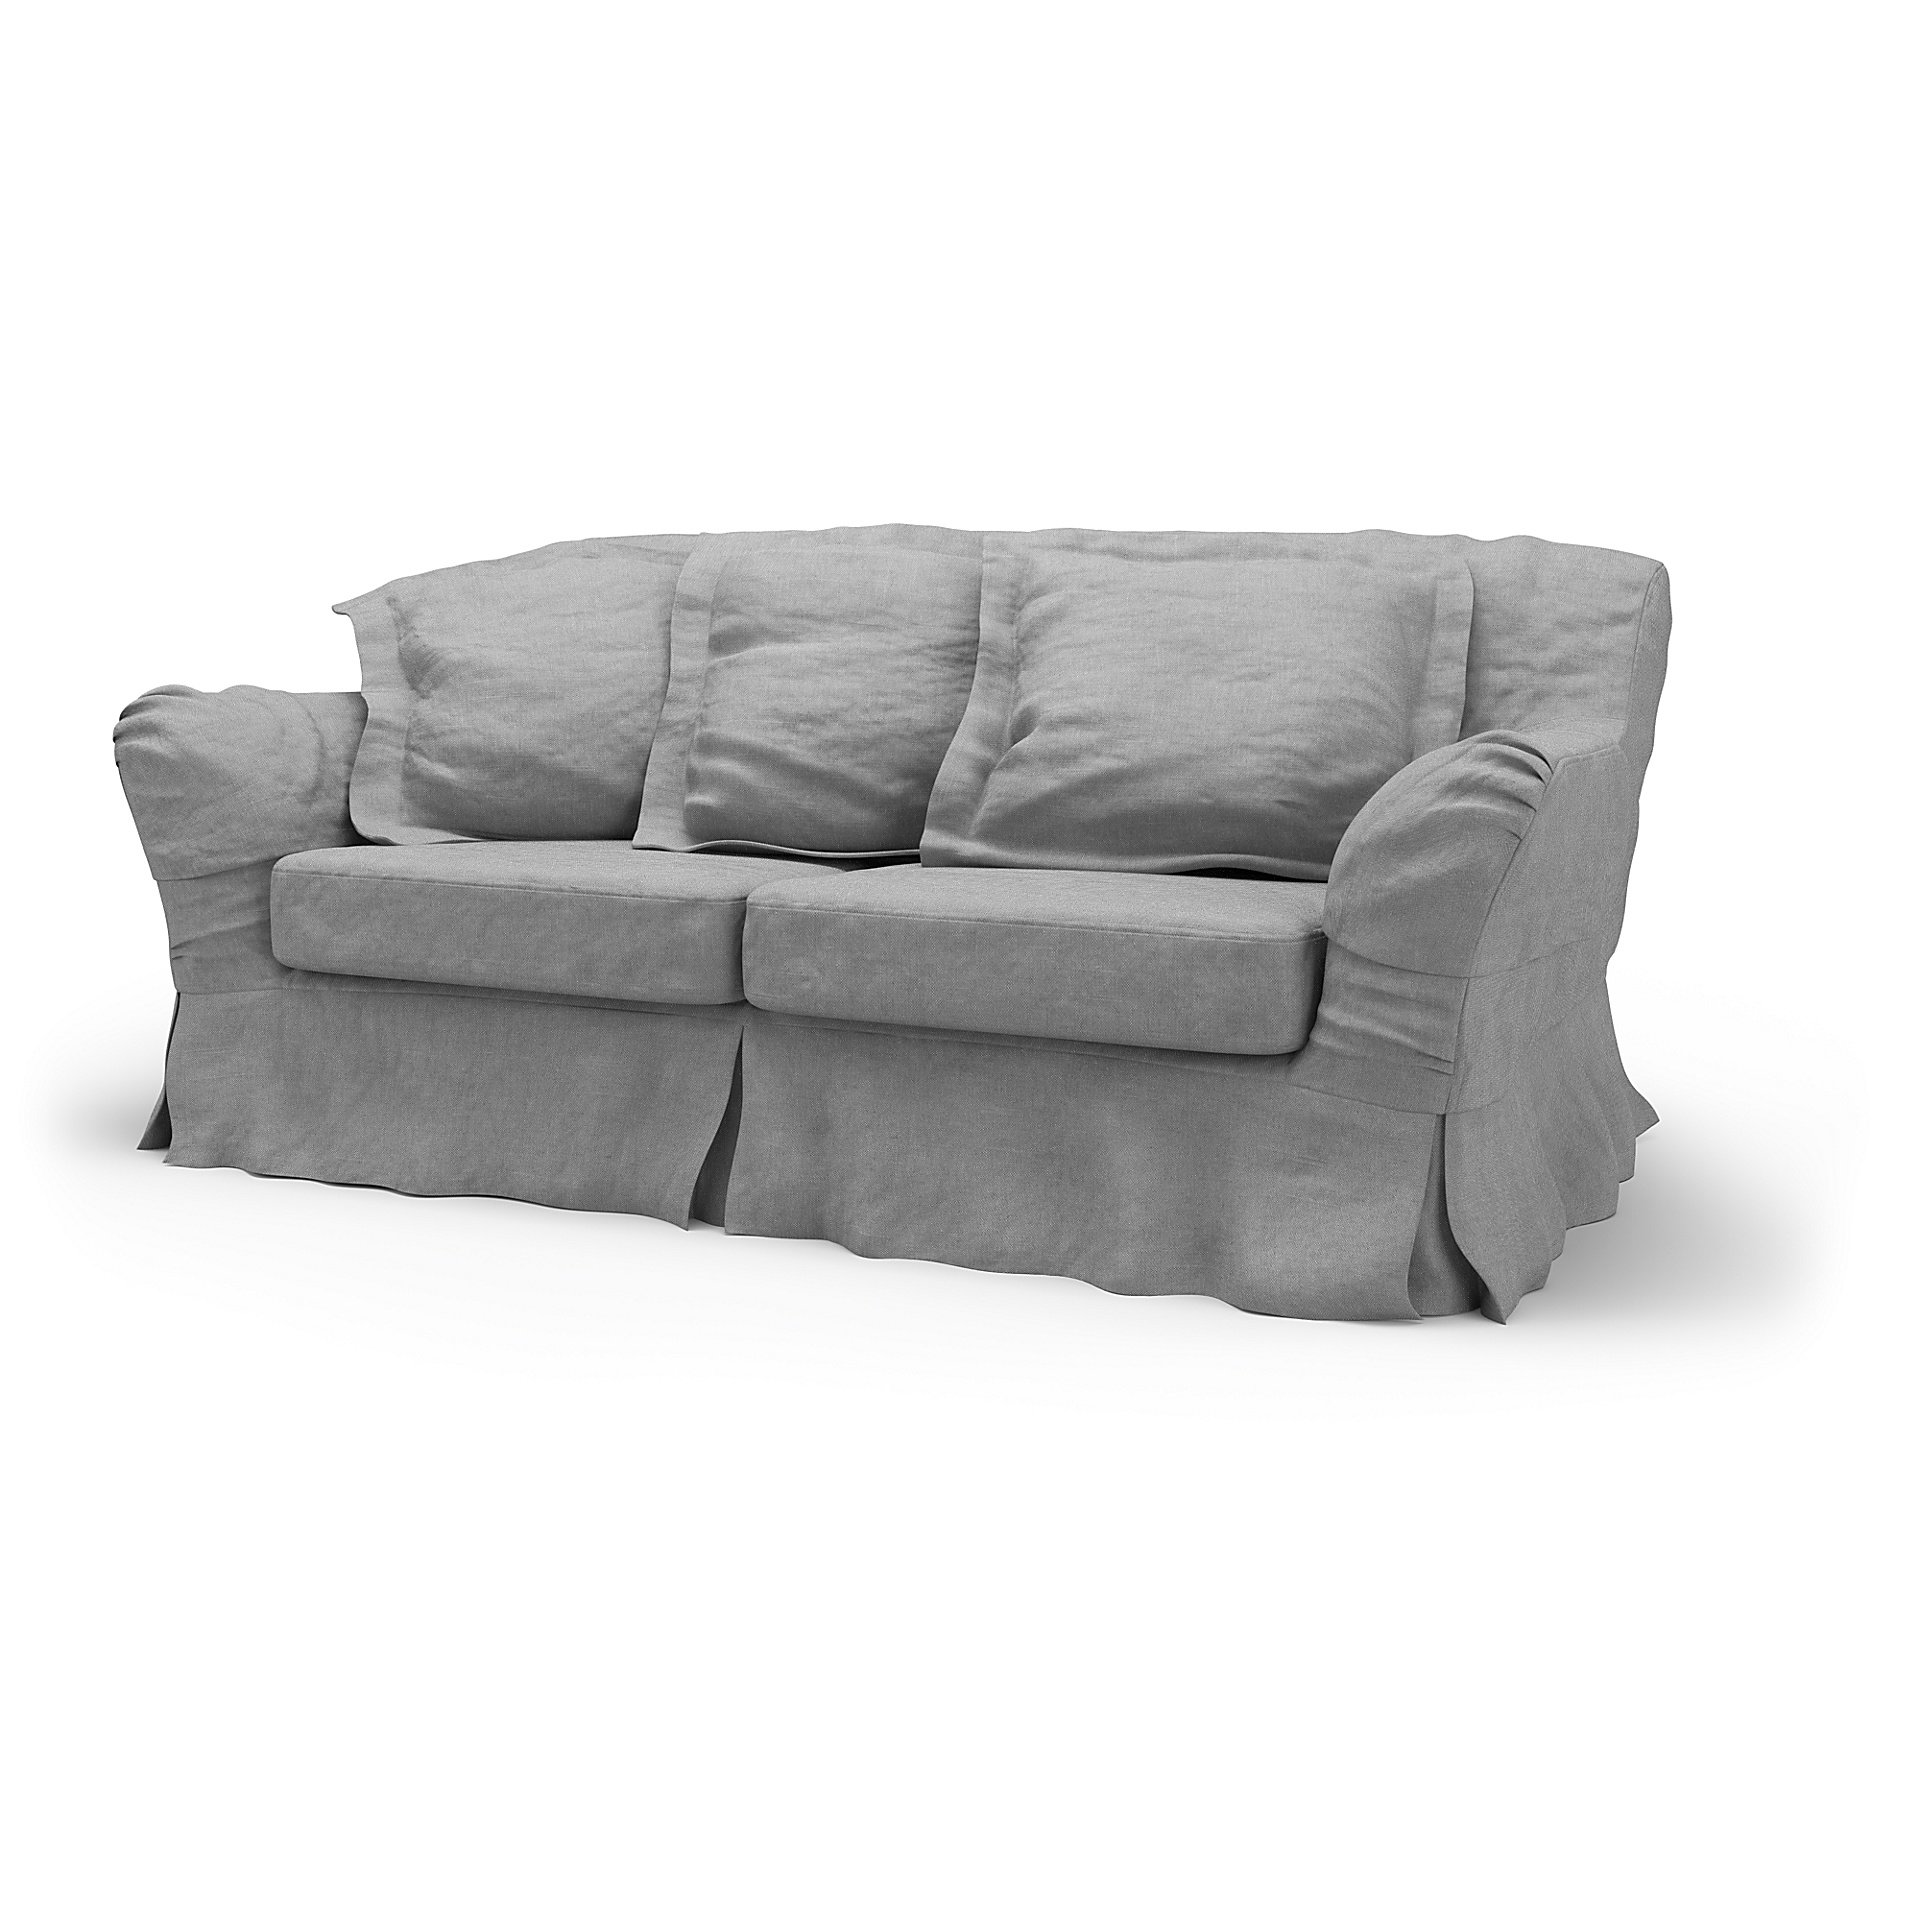 IKEA - Tomelilla 2 Seater Sofa Cover, Graphite, Linen - Bemz